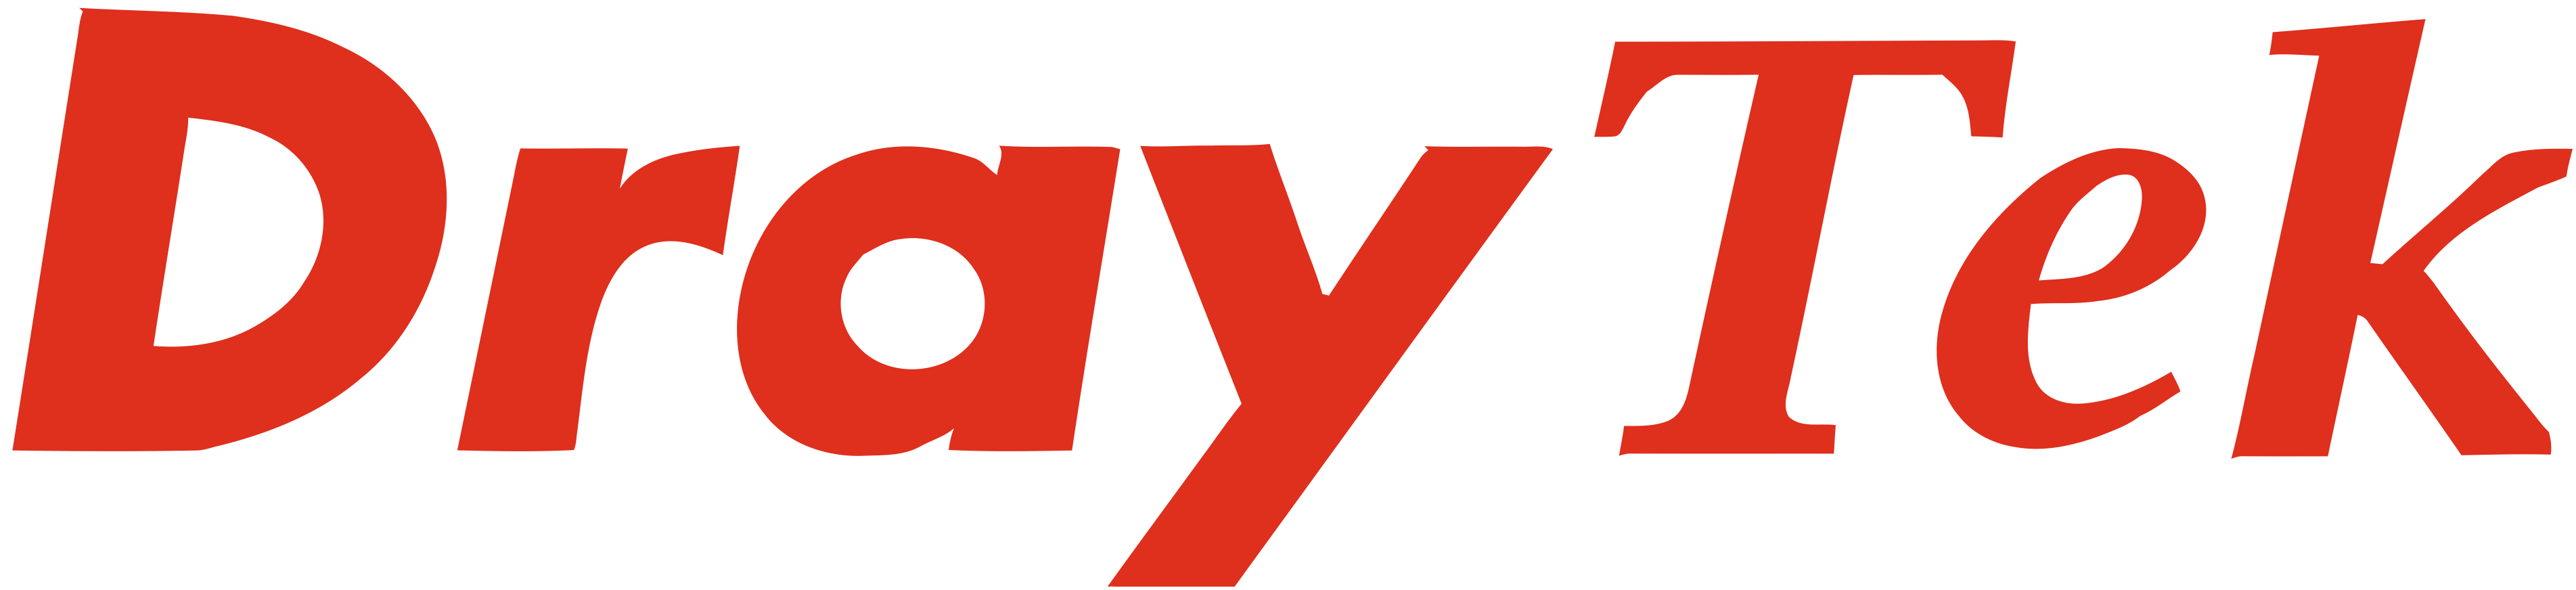 DrayTek logo